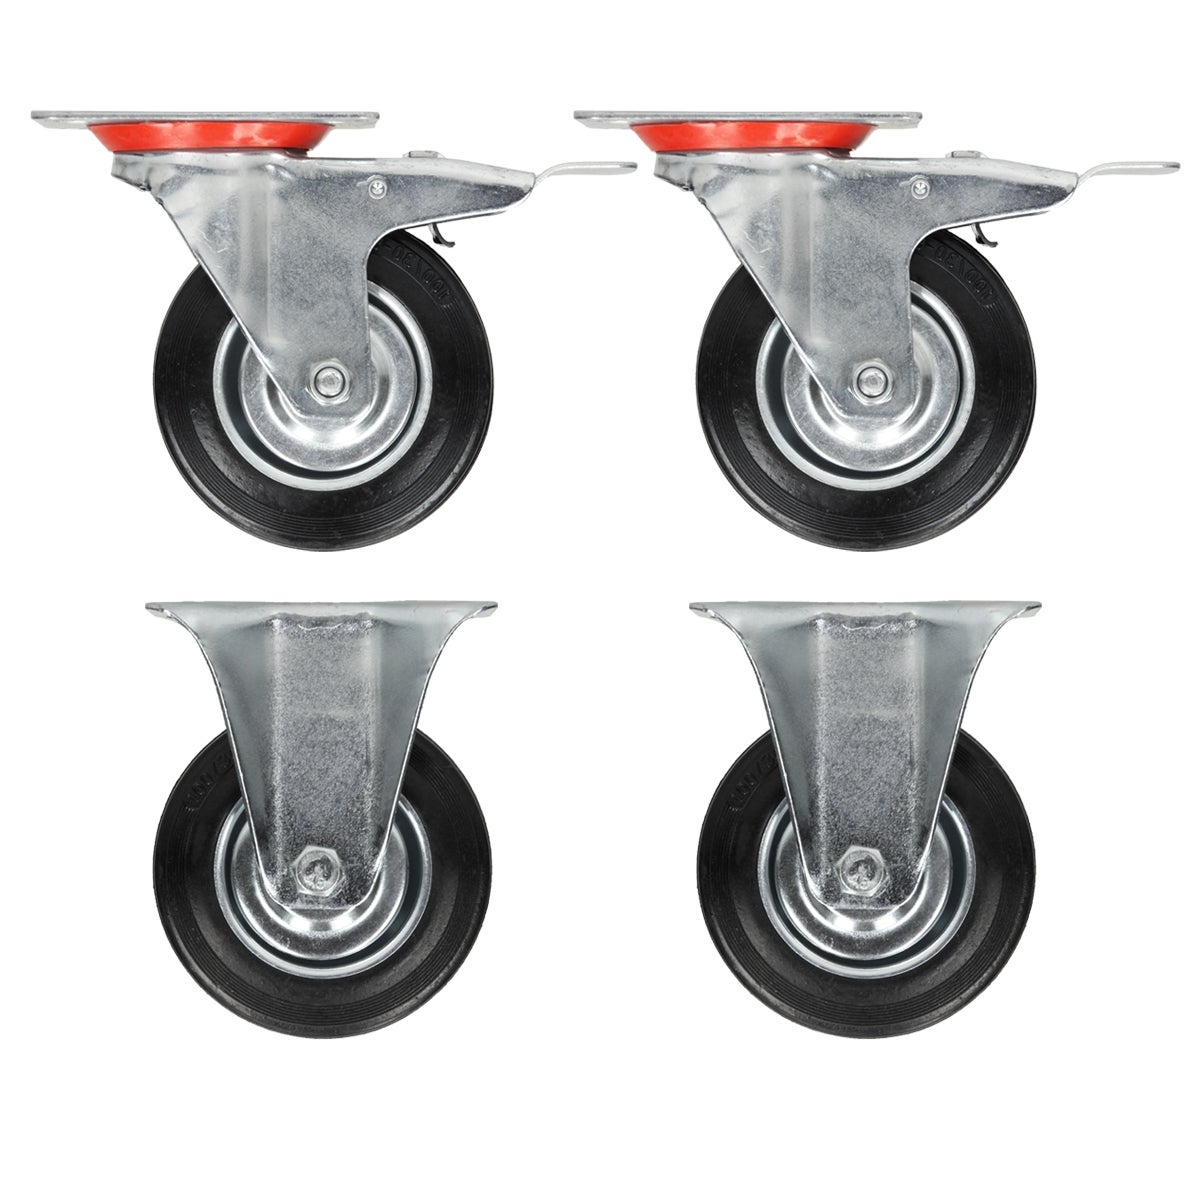 Wow 4 st roues roues pivotantes meubles rôles ø 100 mm roulettes roues fixes NEUF!!! 